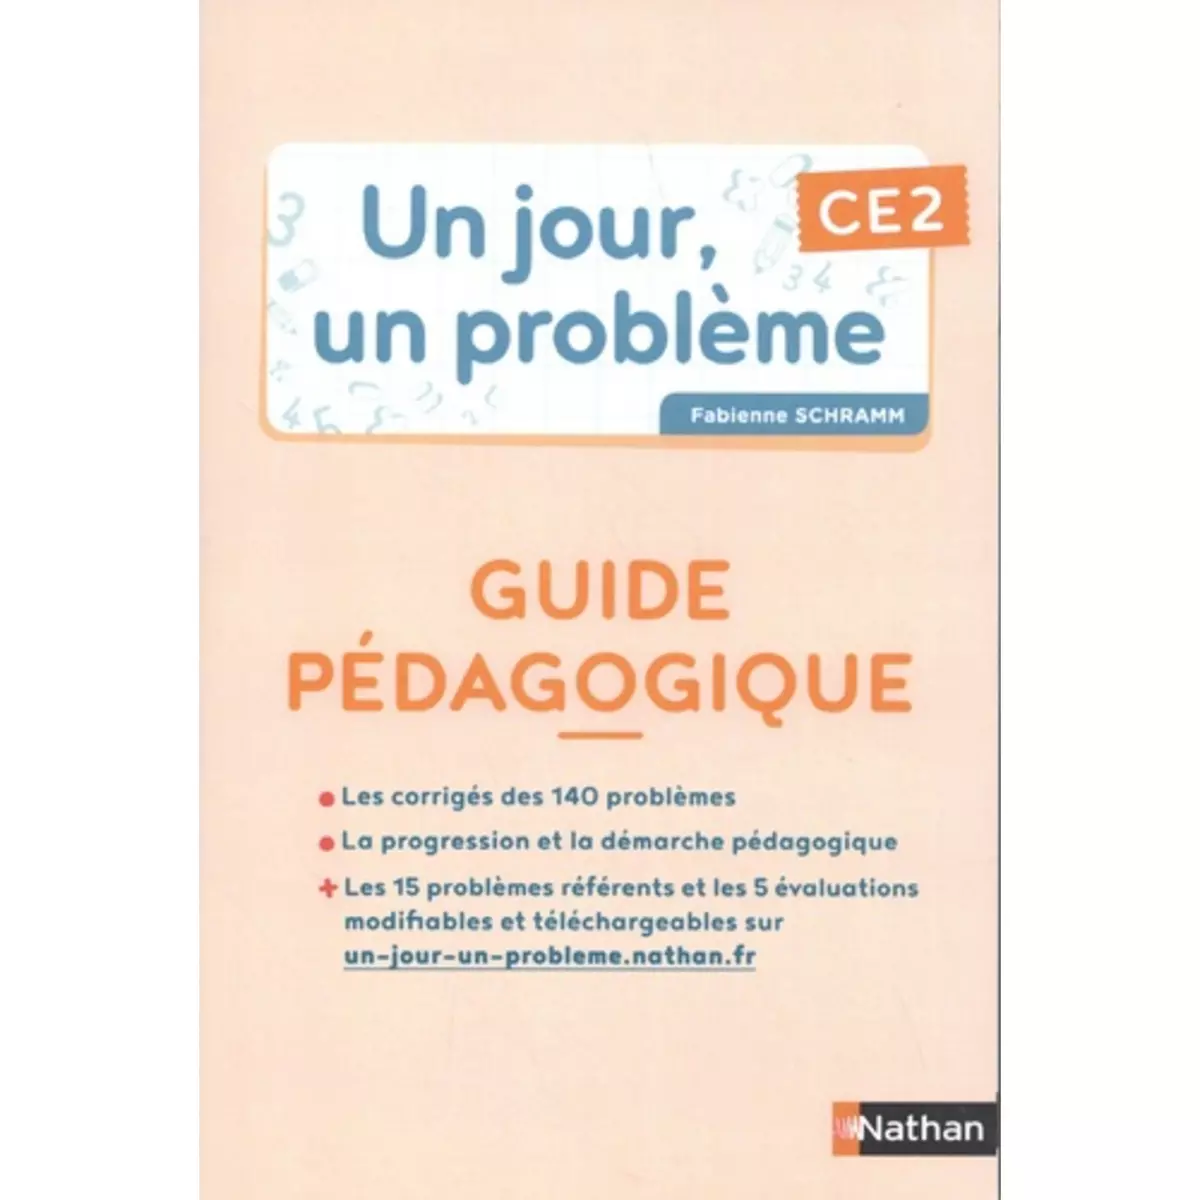  UN JOUR, UN PROBLEME CE2. GUIDE PEDAGOGIQUE, EDITION 2021, Schramm Fabienne